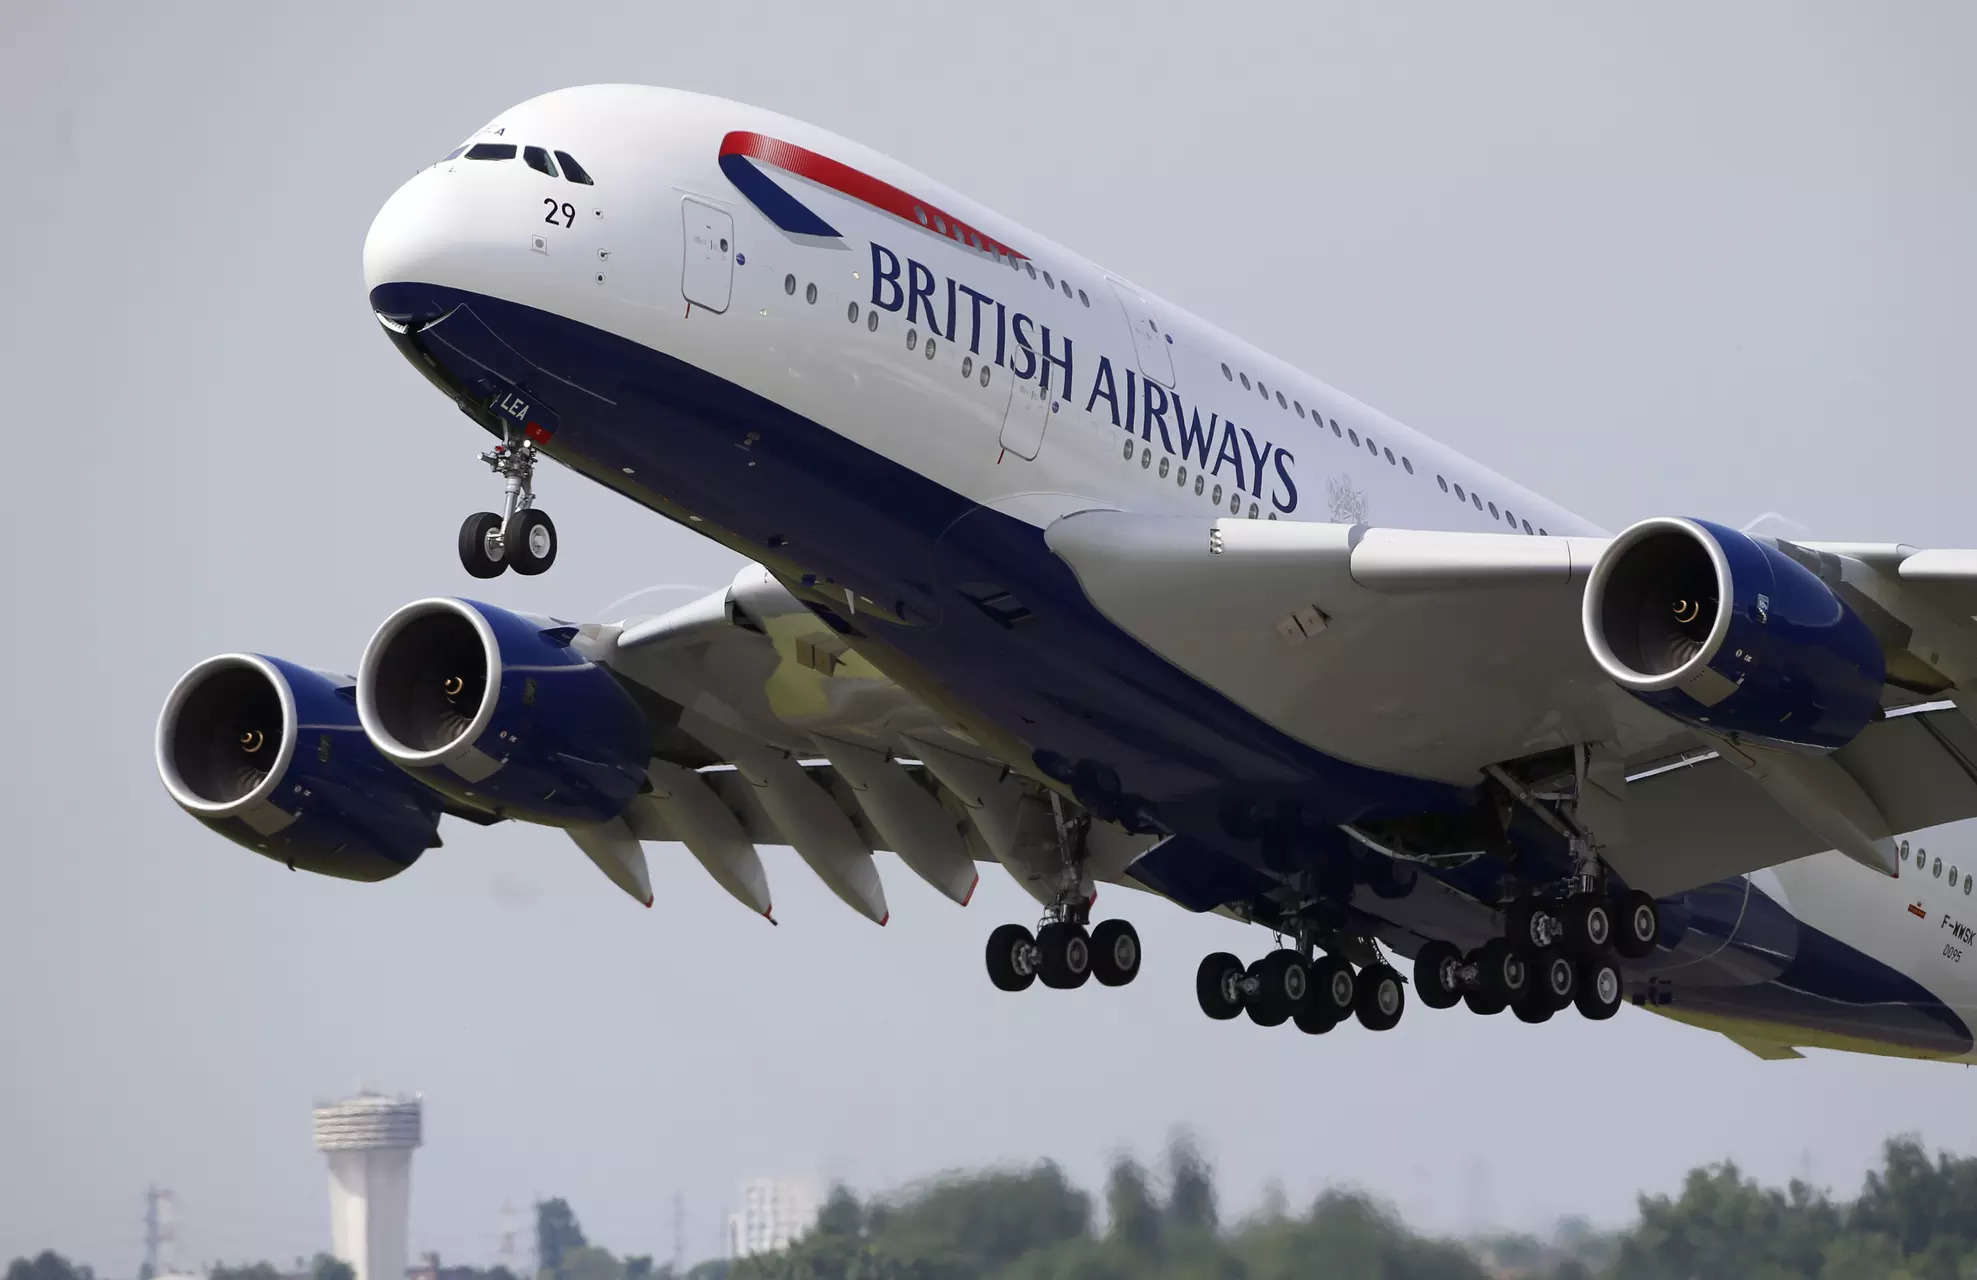 British Airways embarks on £7 billion transformation plan with new website & app